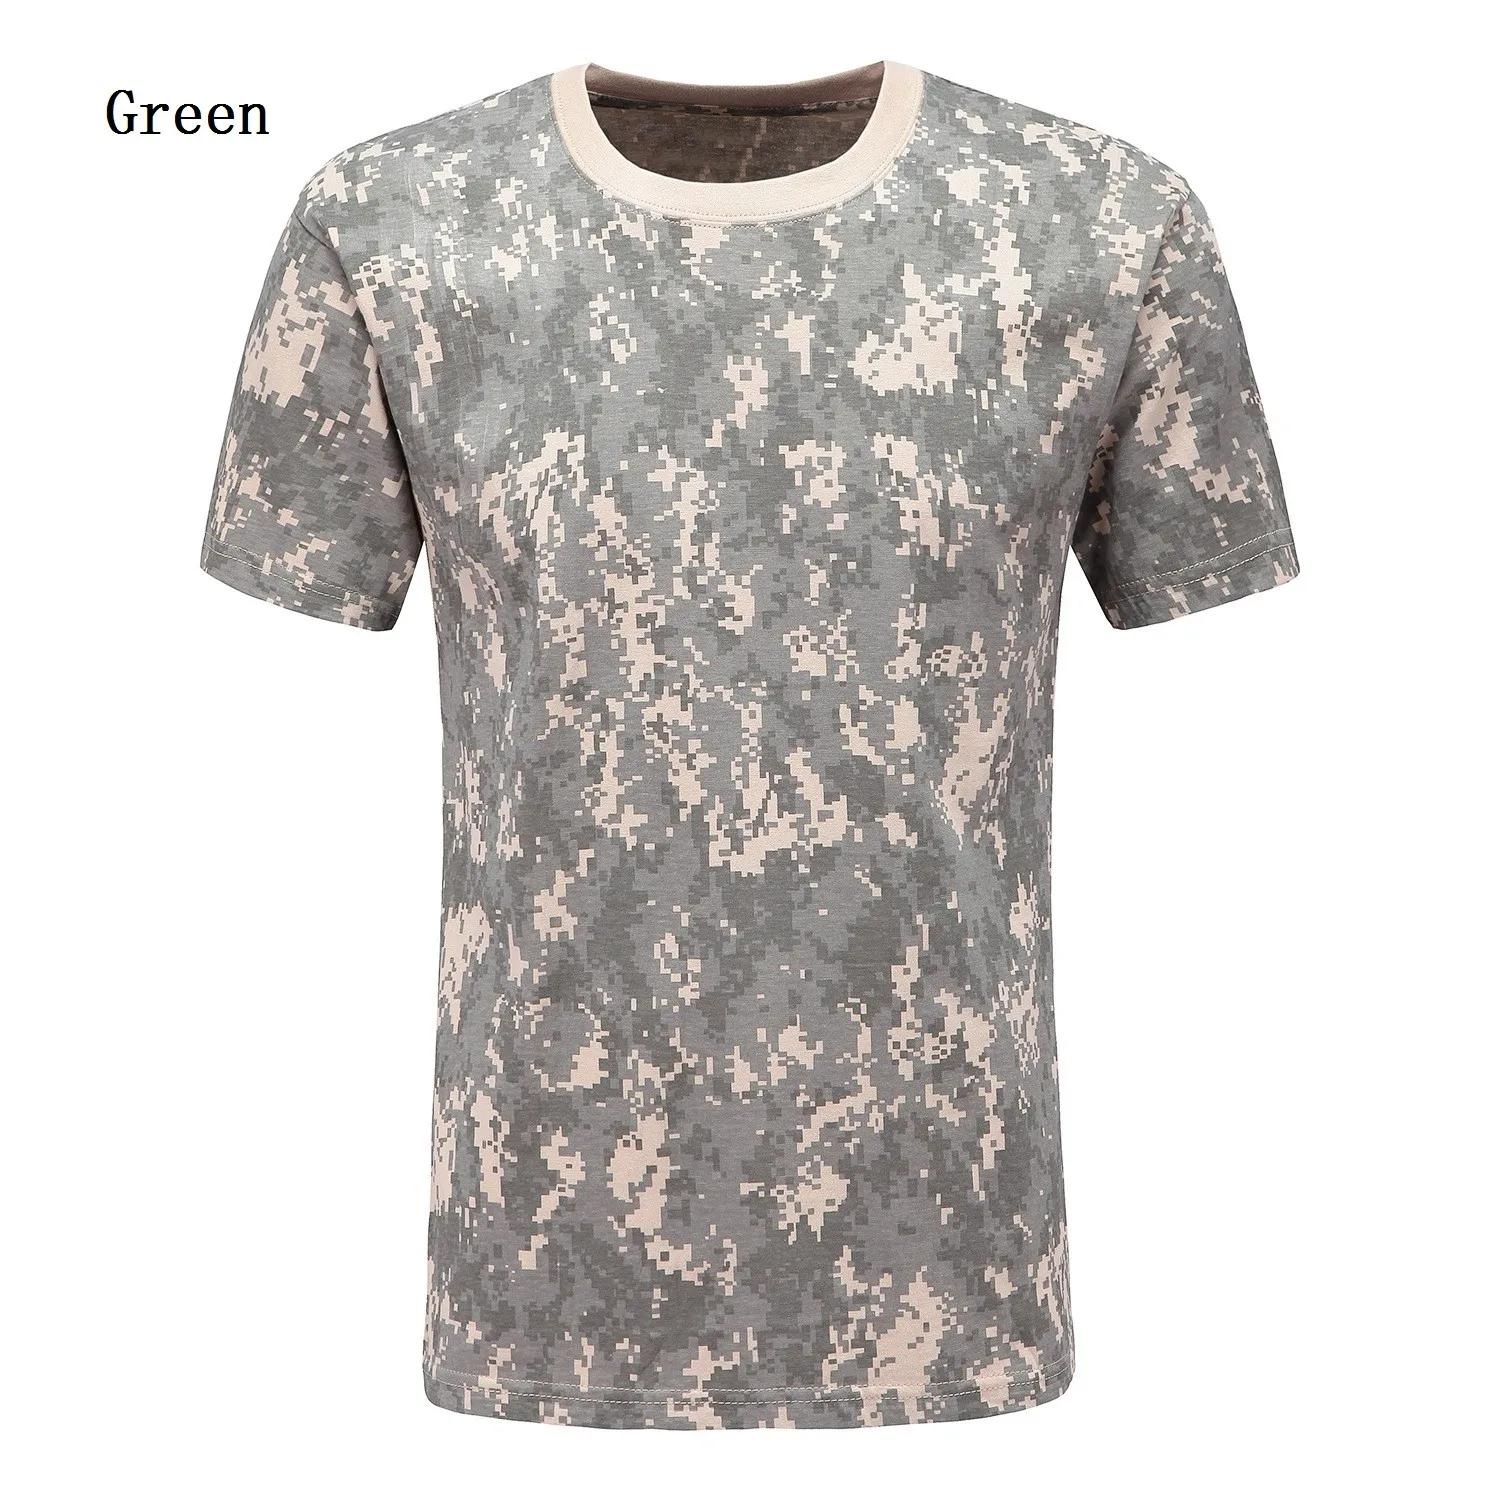 Zogaa 9 видов цветов Для мужчин футболки короткий рукав камуфляж военные открытый Повседневное Футболка с принтом человек футболка качество Футболки